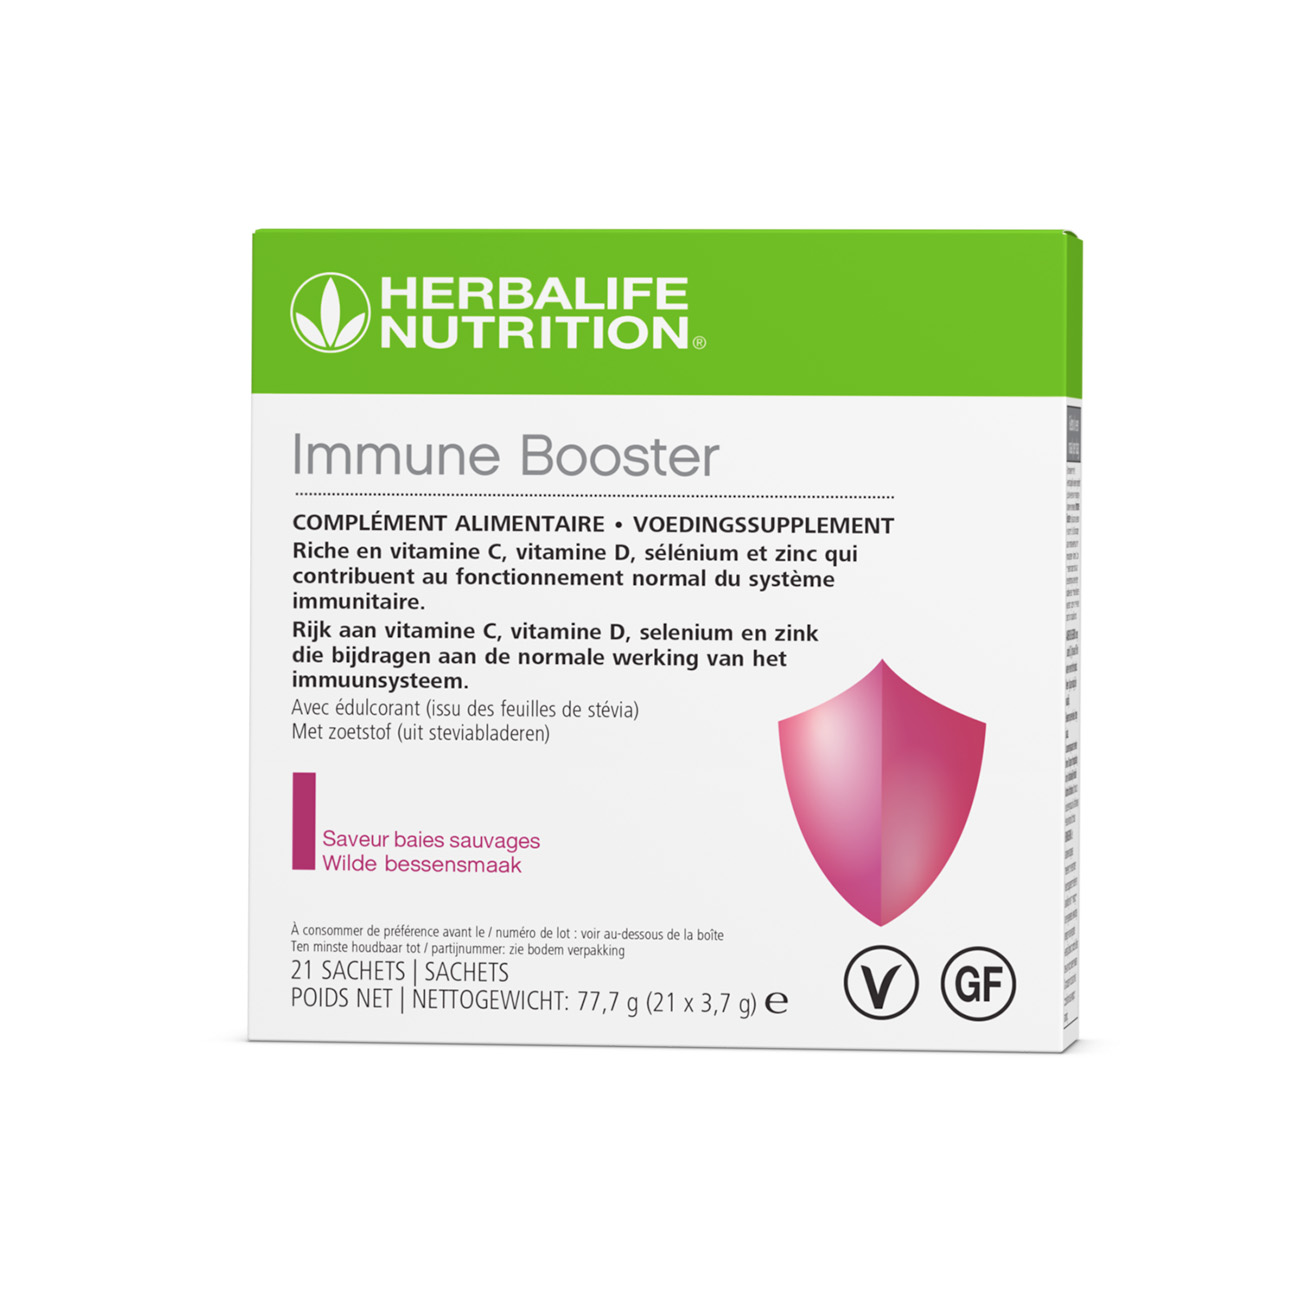 Immune Booster est formulé avec EpiCor® et st riche en vitamines et minéraux importants. C'est un excellent moyen de prendre soin de votre système immunitaire où que vous soyez.